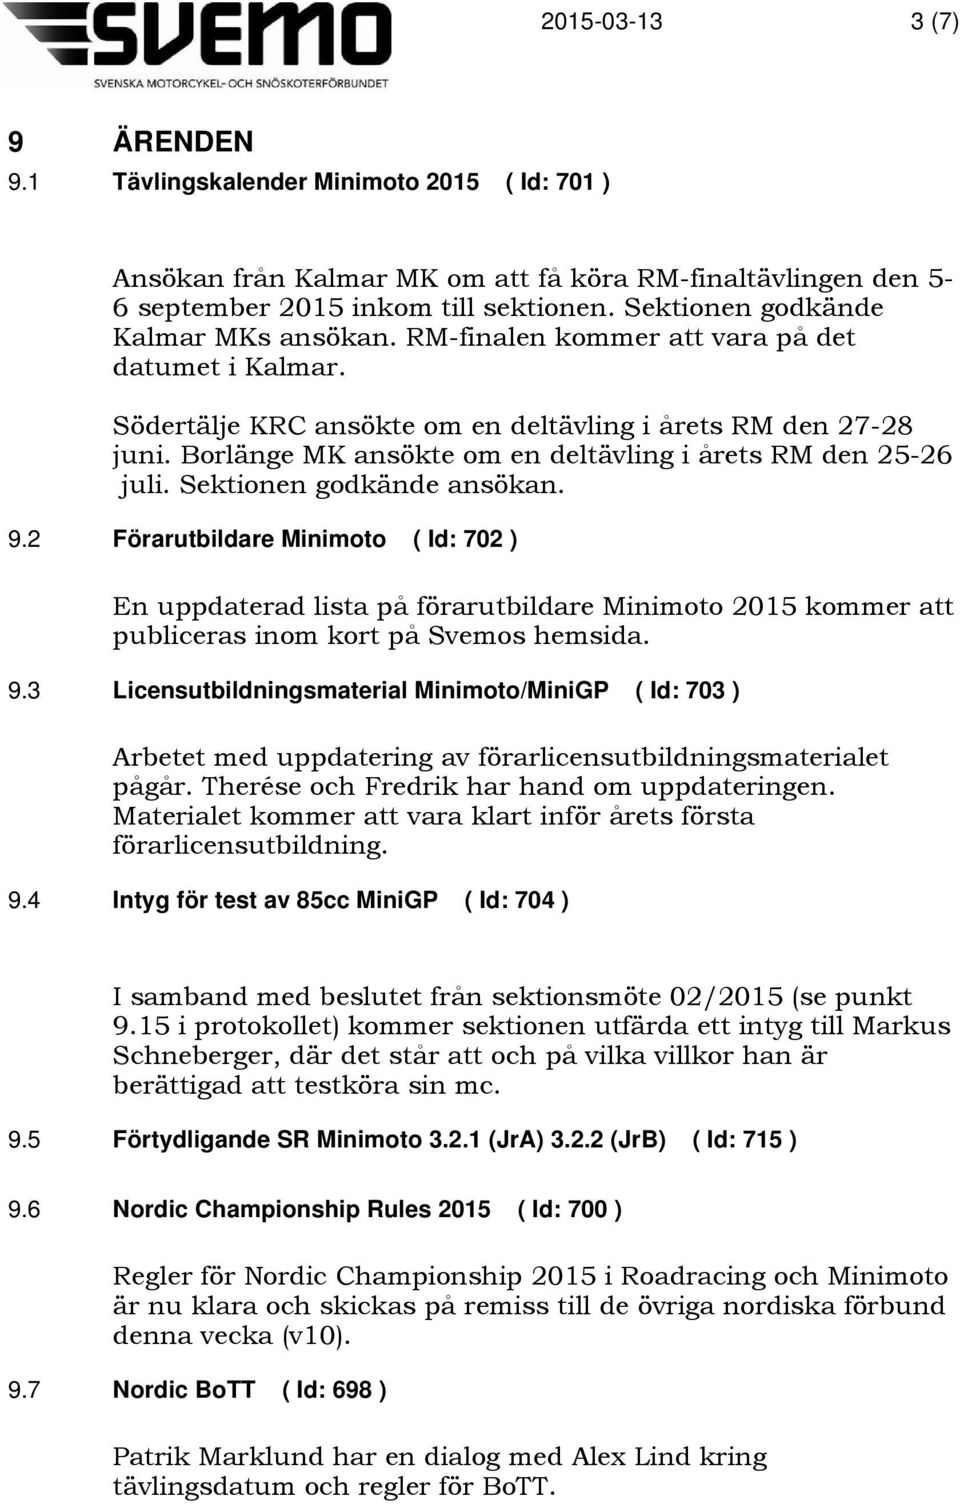 Borlänge MK ansökte om en deltävling i årets RM den 25-26 juli. Sektionen godkände ansökan. 9.